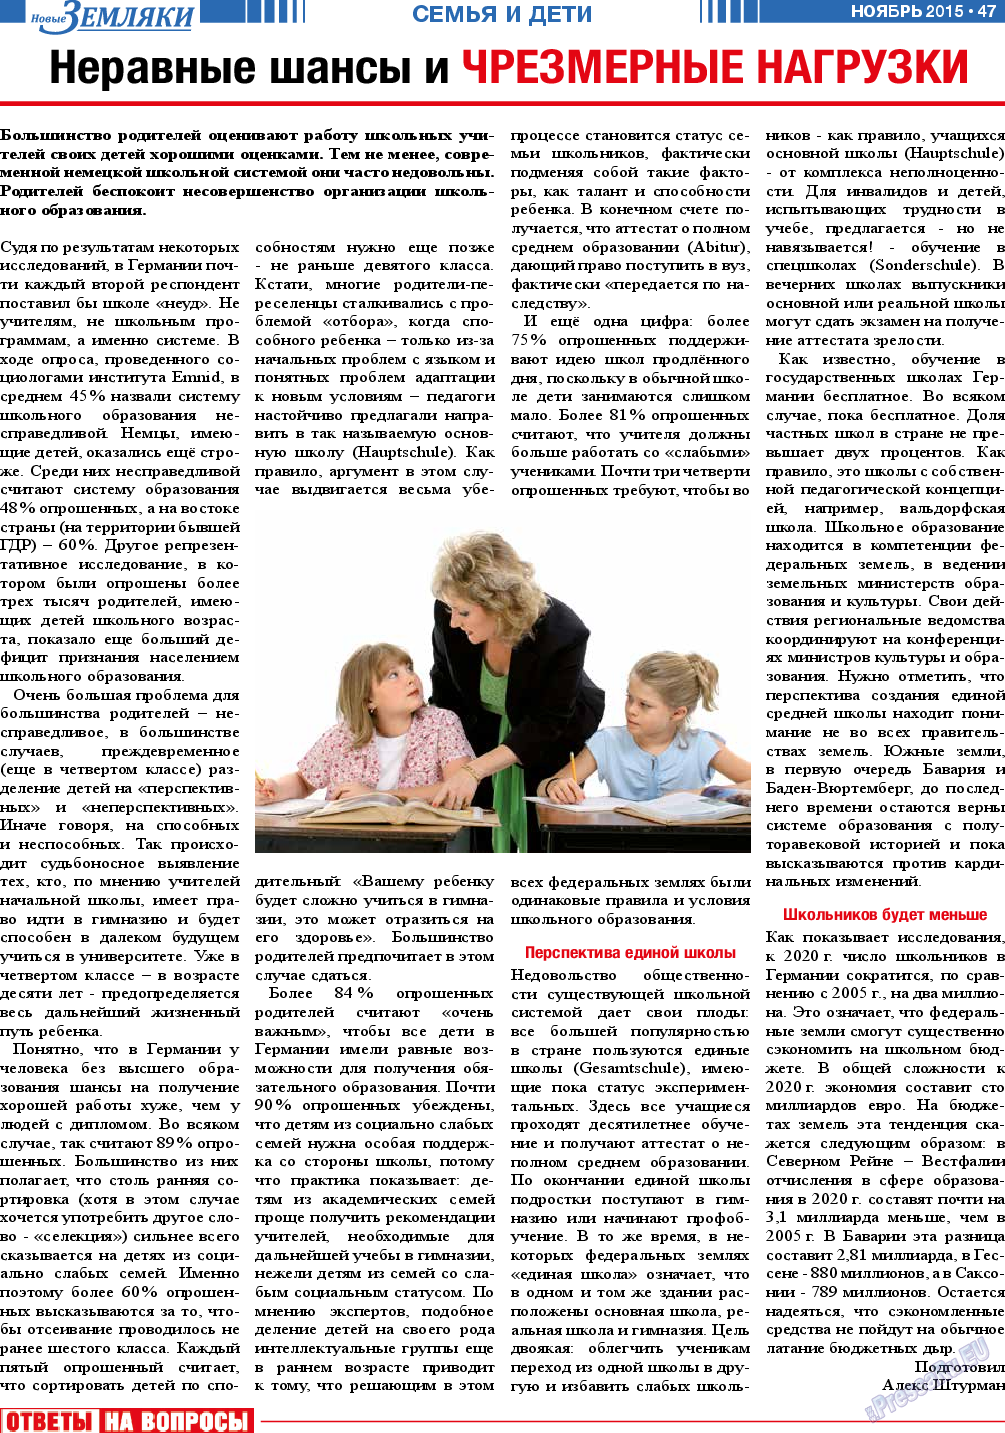 Новые Земляки (газета). 2015 год, номер 11, стр. 47